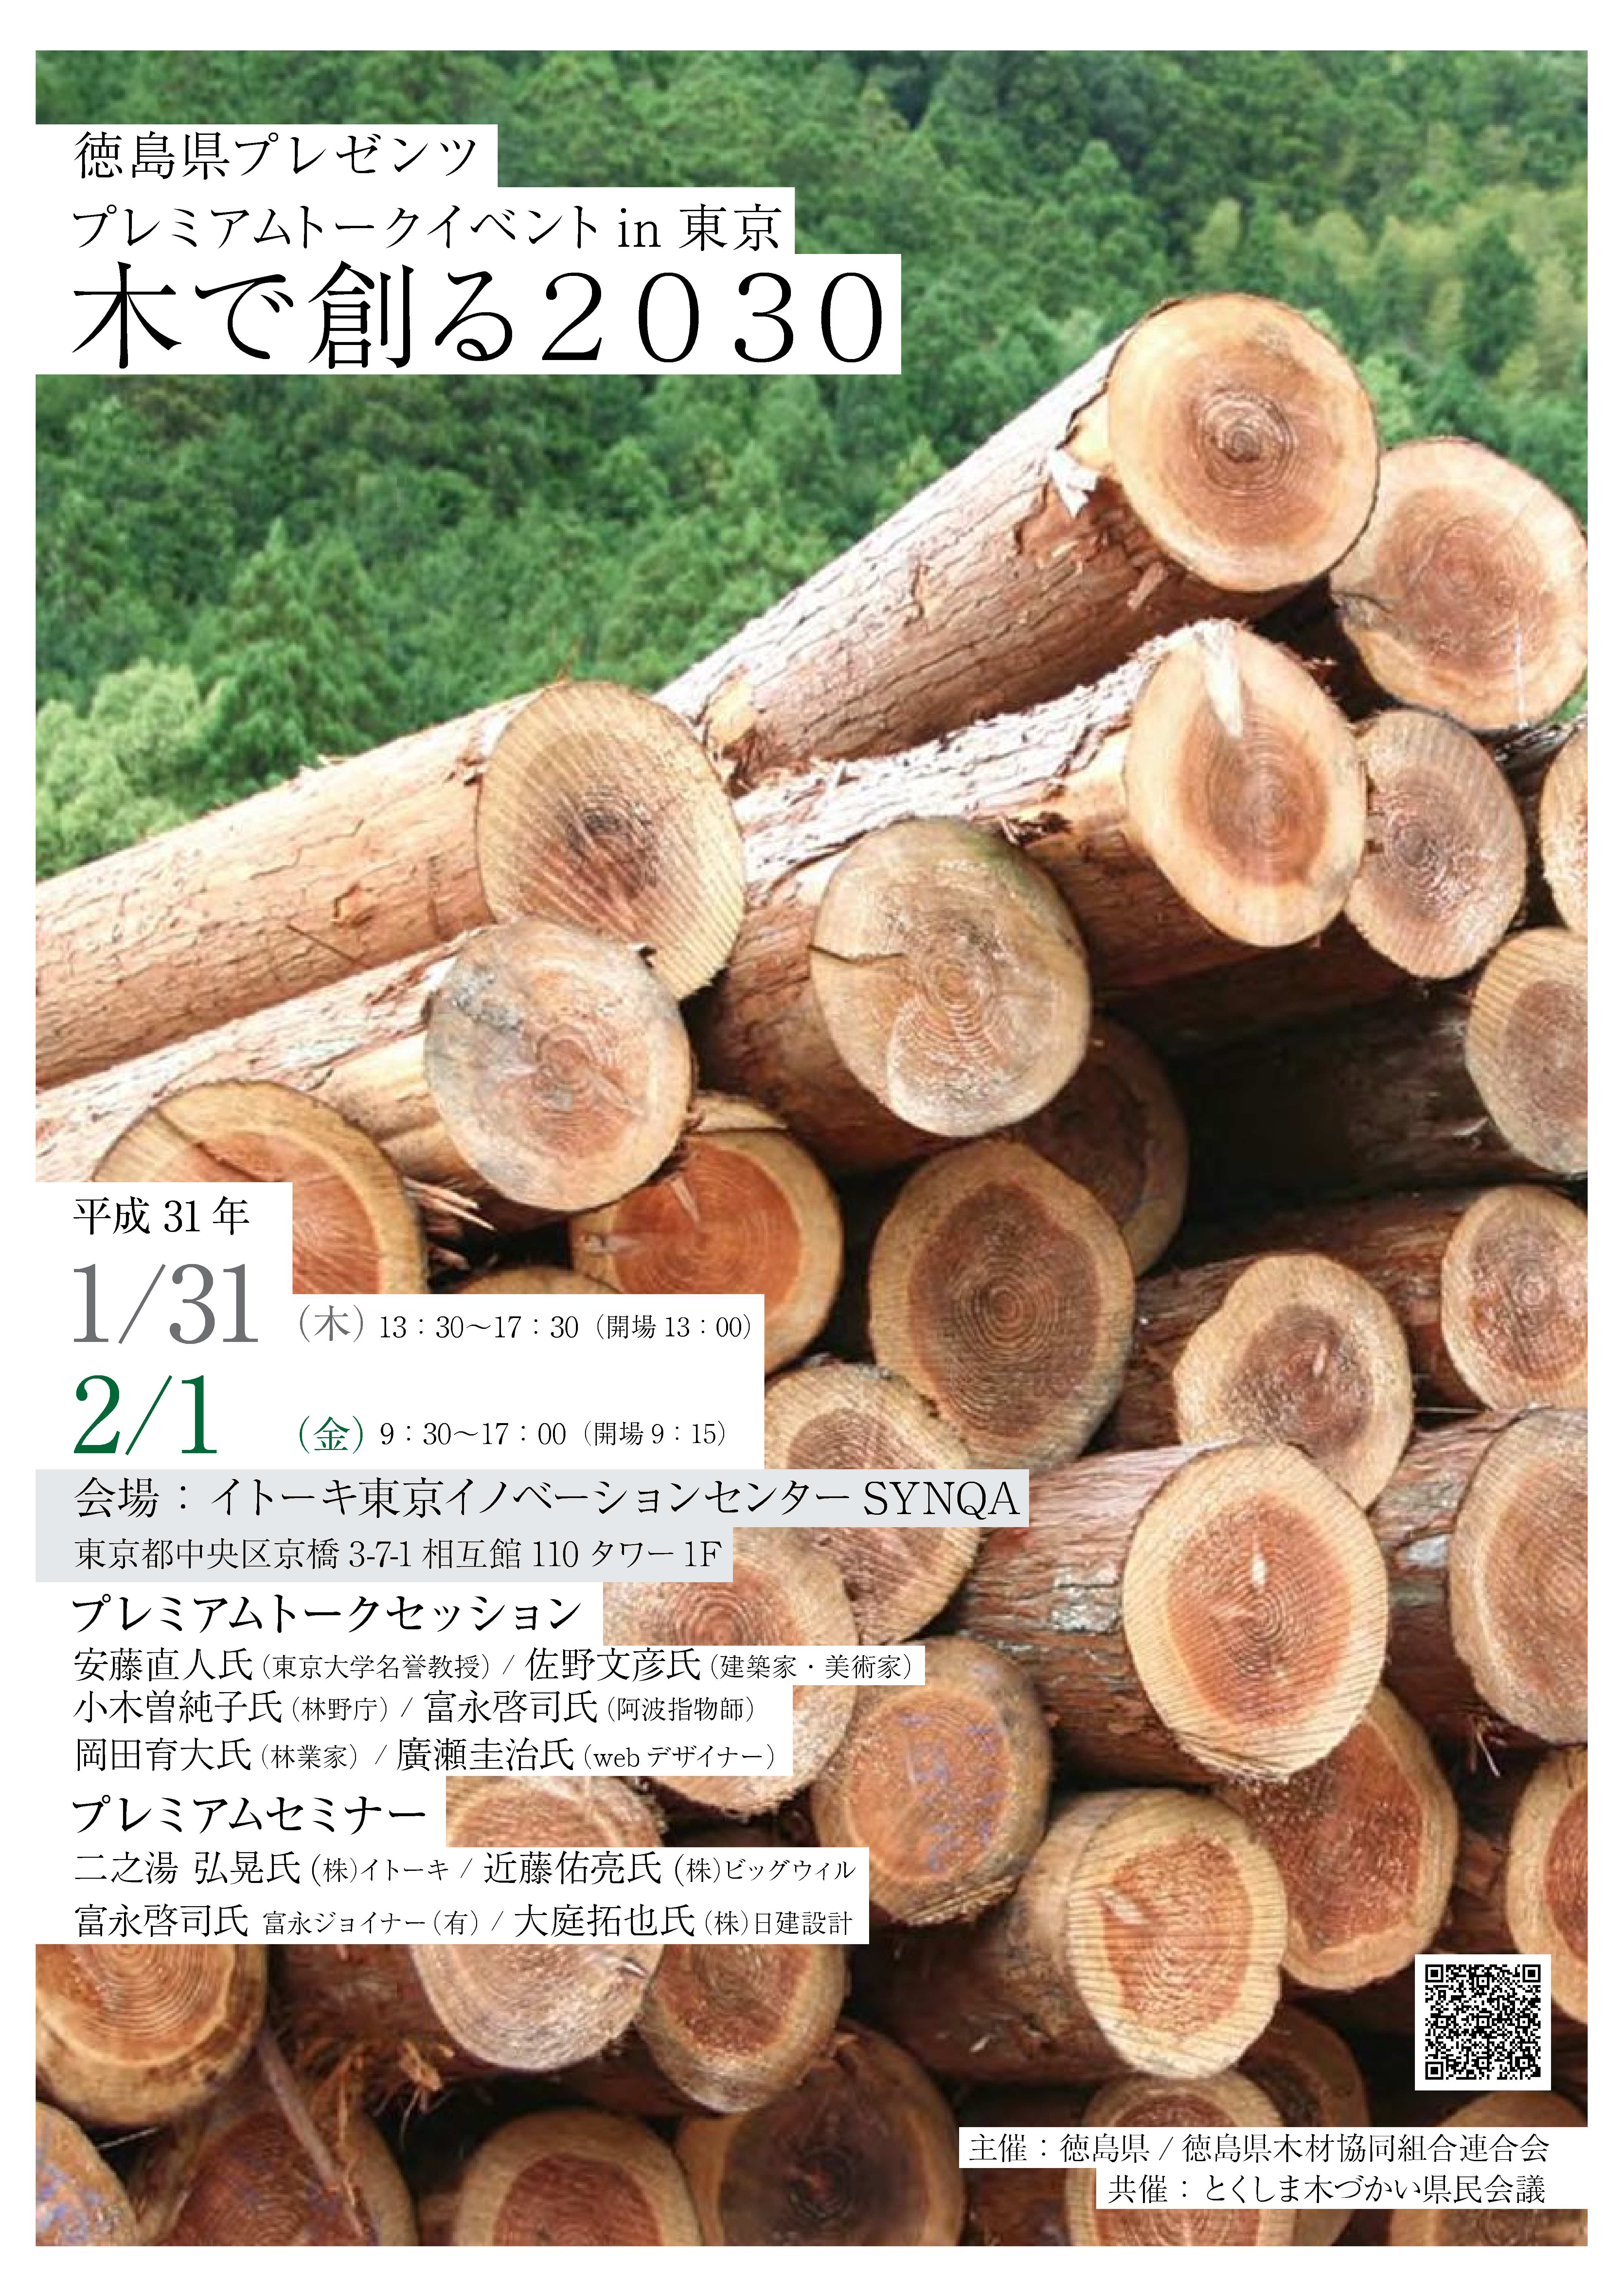 徳島県イベント in イトーキ東京イノベーションセンター 木粉活用製品展示します！